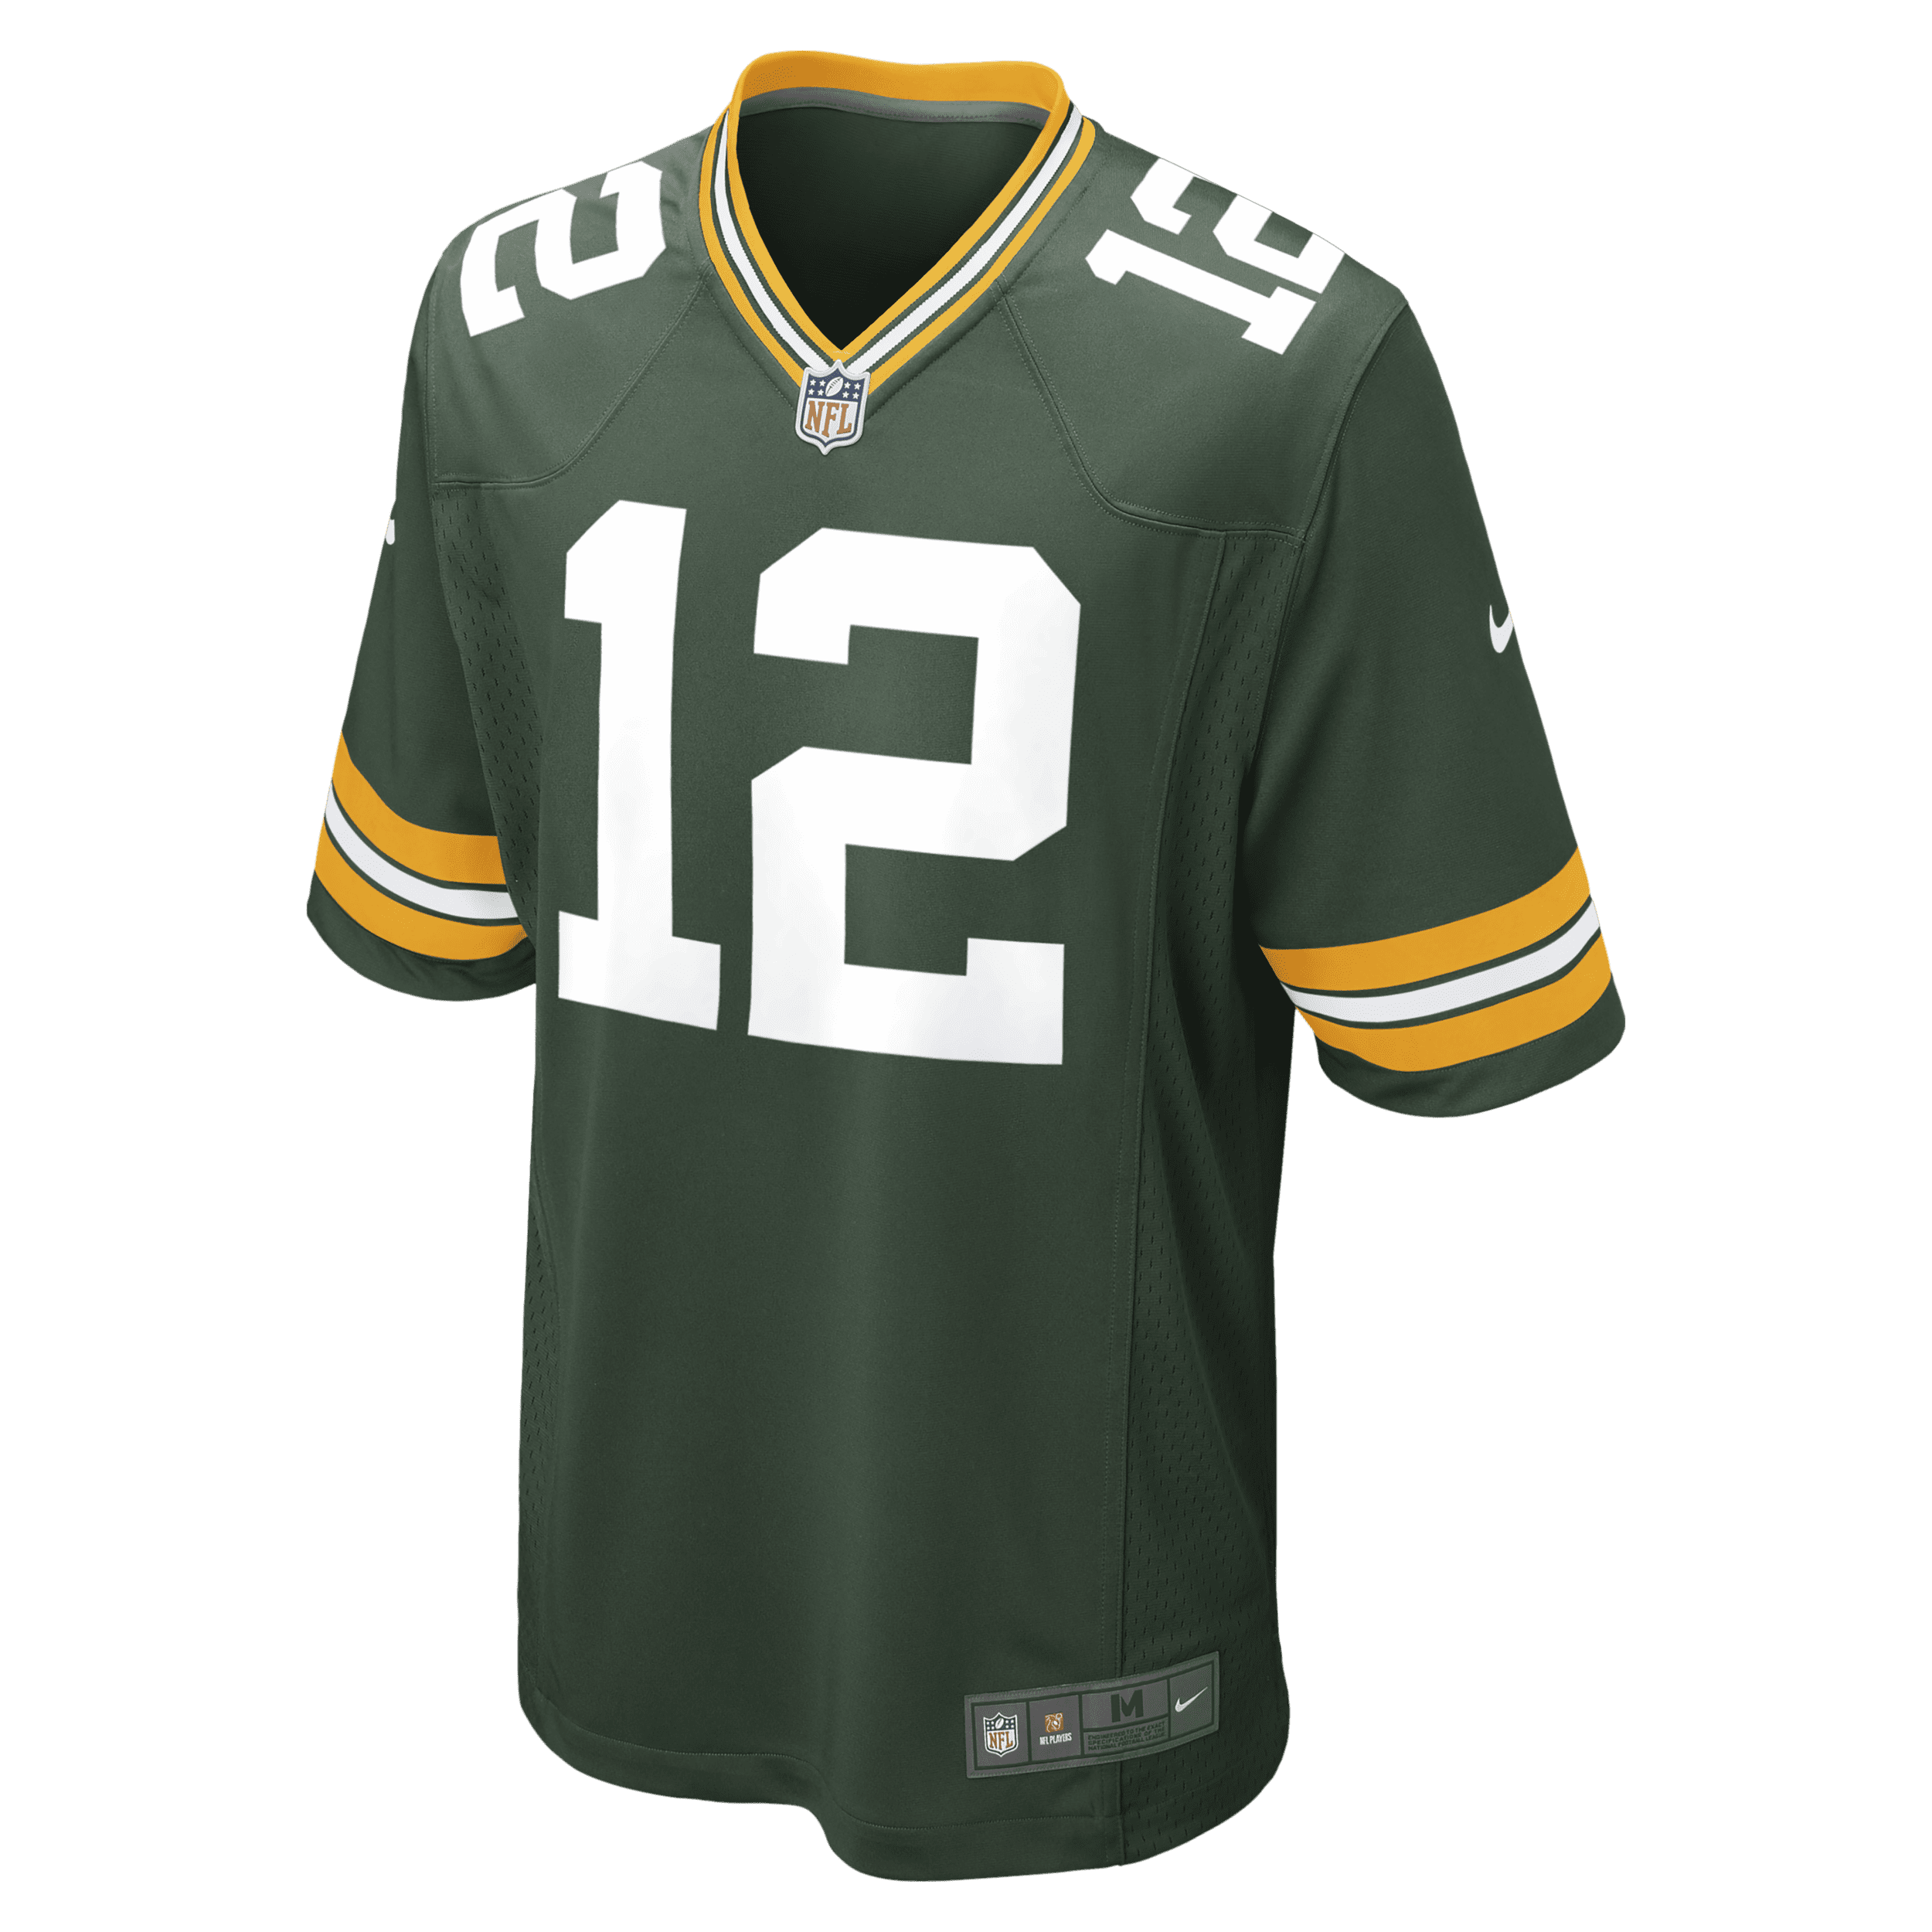 Nike NFL Green Bay Packers (Aaron Rodgers) American-football-wedstrijdjersey voor heren - Groen